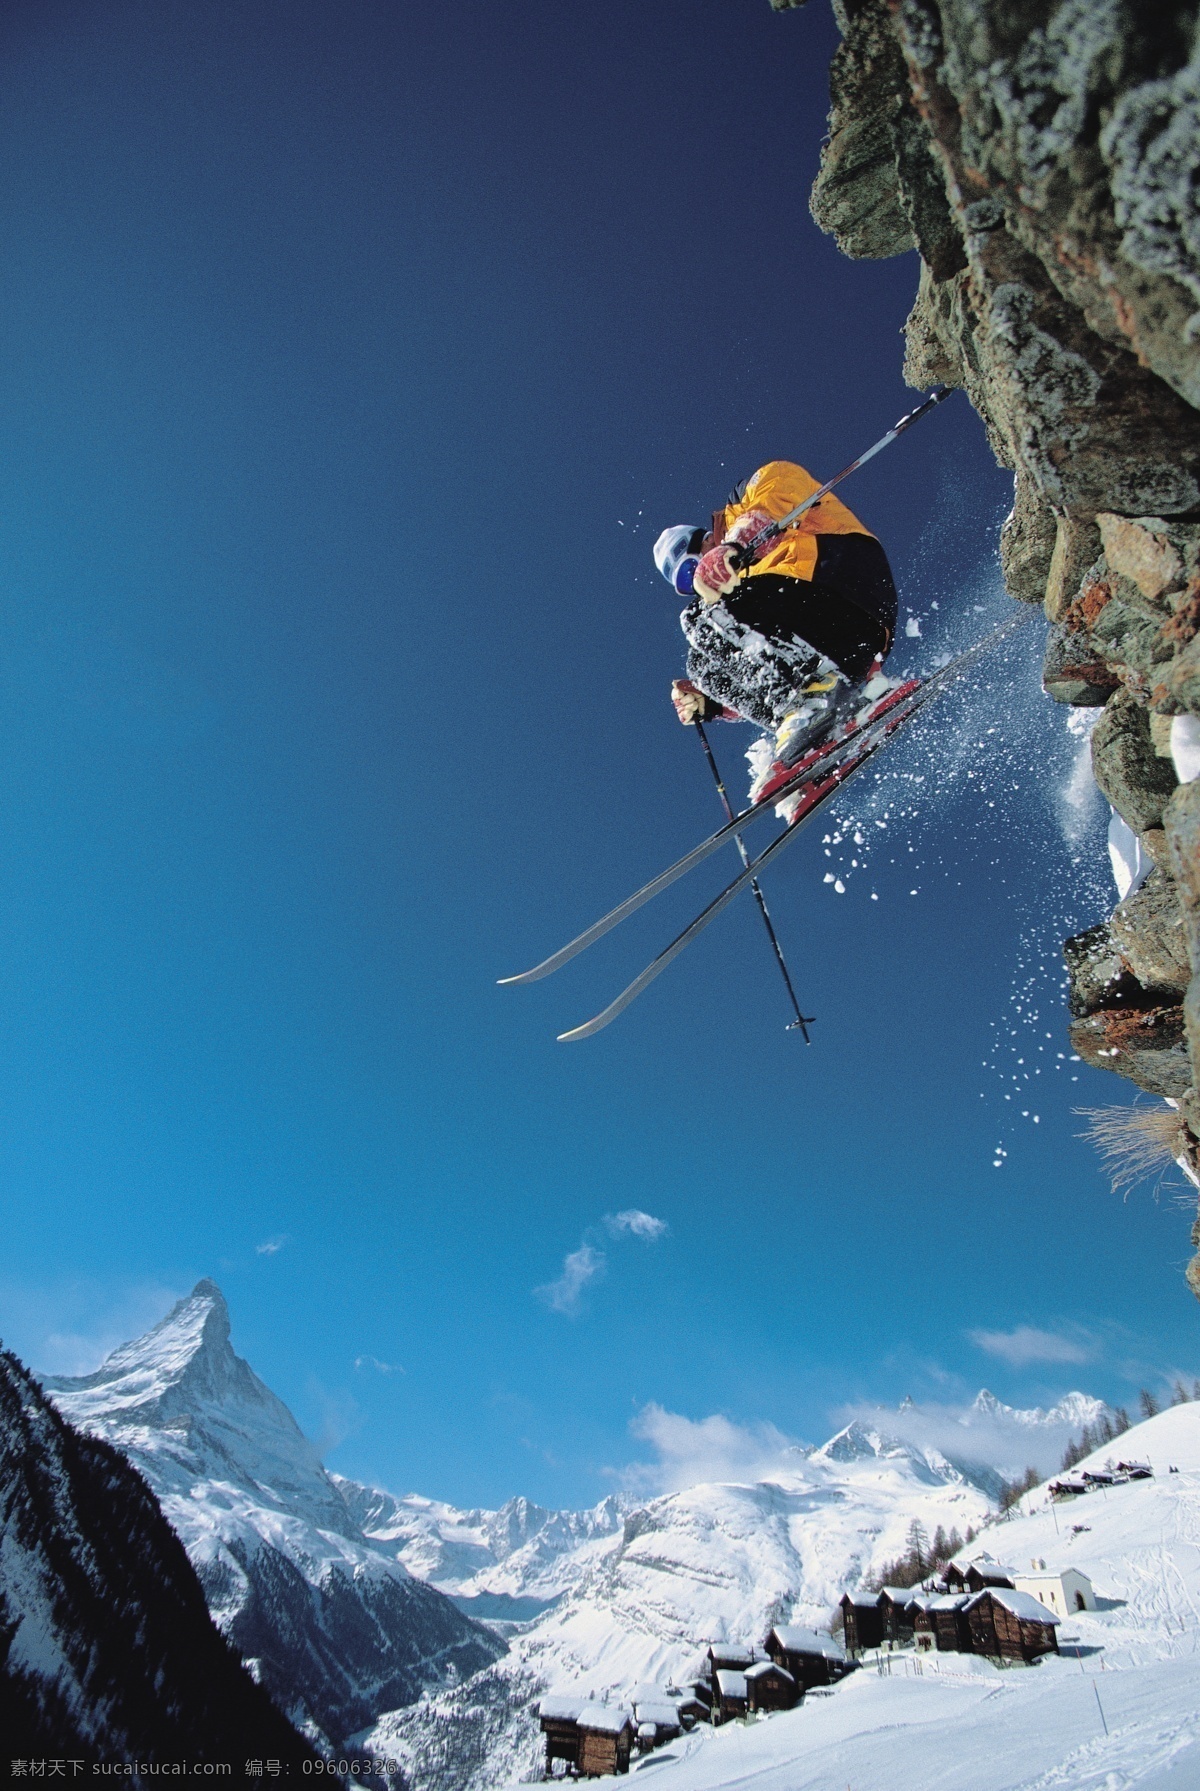 腾空 飞跃 滑雪 运动员 高清 冬天 雪地运动 划雪运动 极限运动 体育项目 腾空飞跃 下滑 速度 运动图片 生活百科 雪山 美丽 雪景 风景 摄影图片 高清图片 体育运动 蓝色